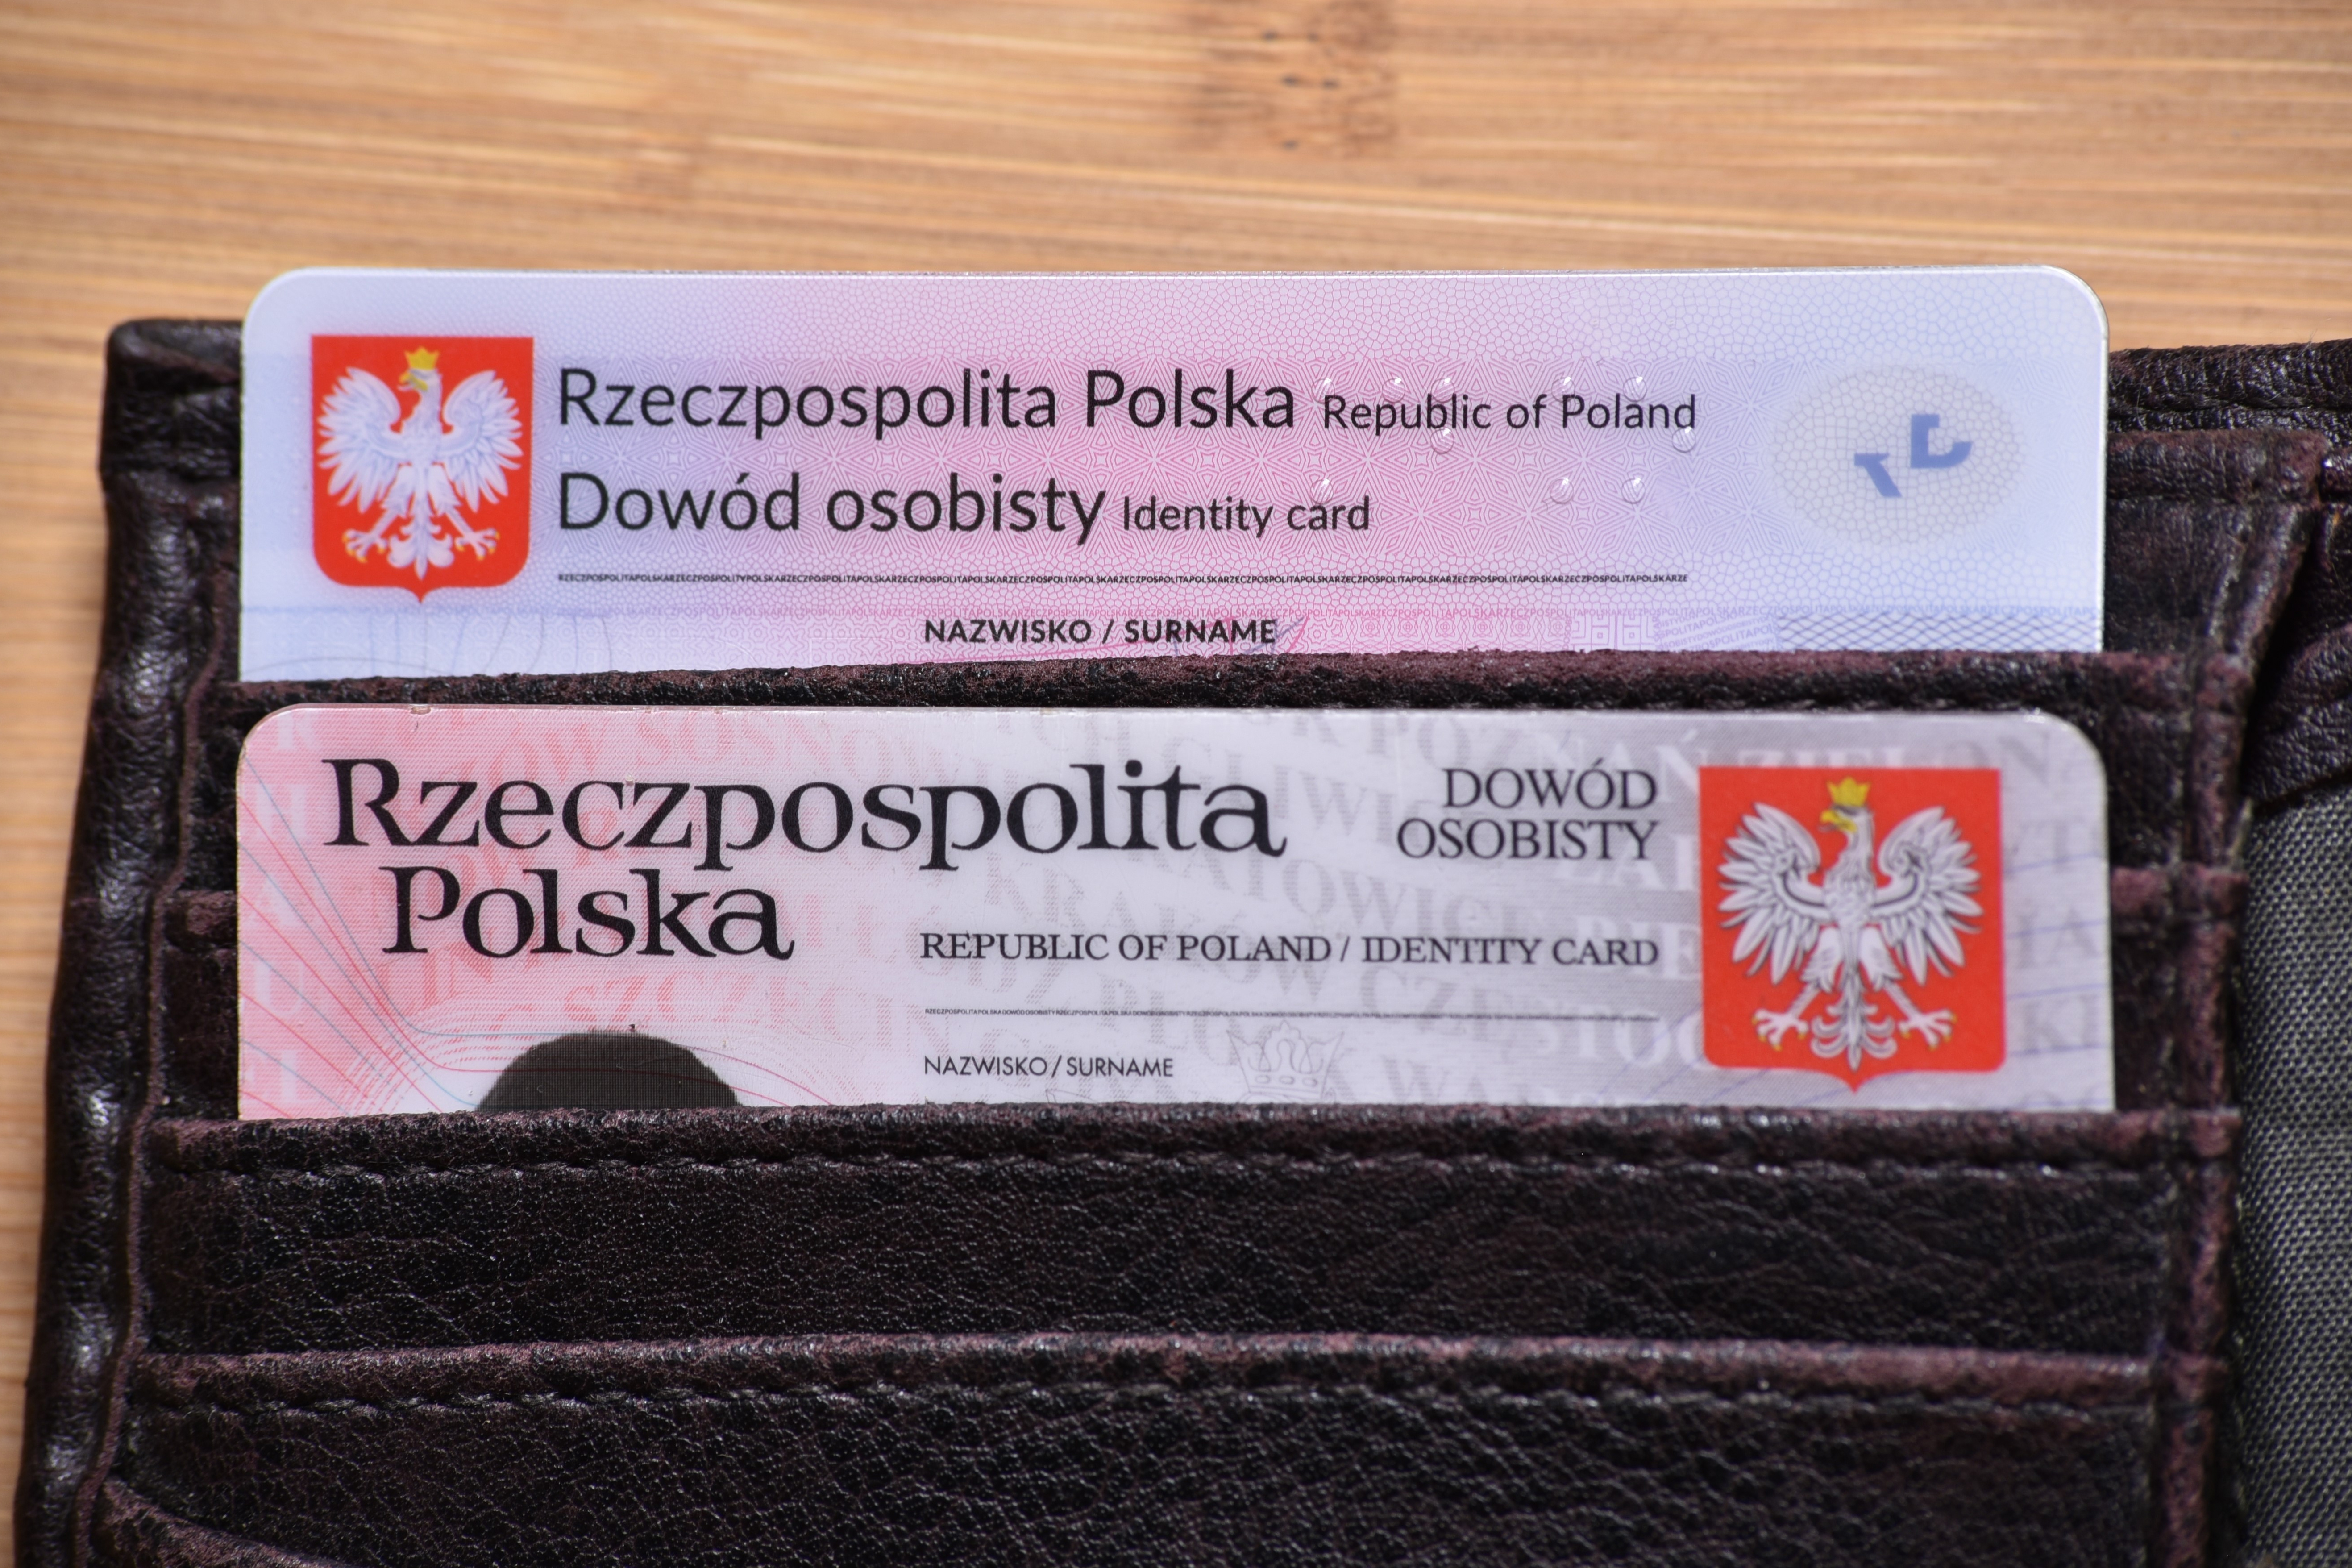 Получаем карту поляка без польских корней